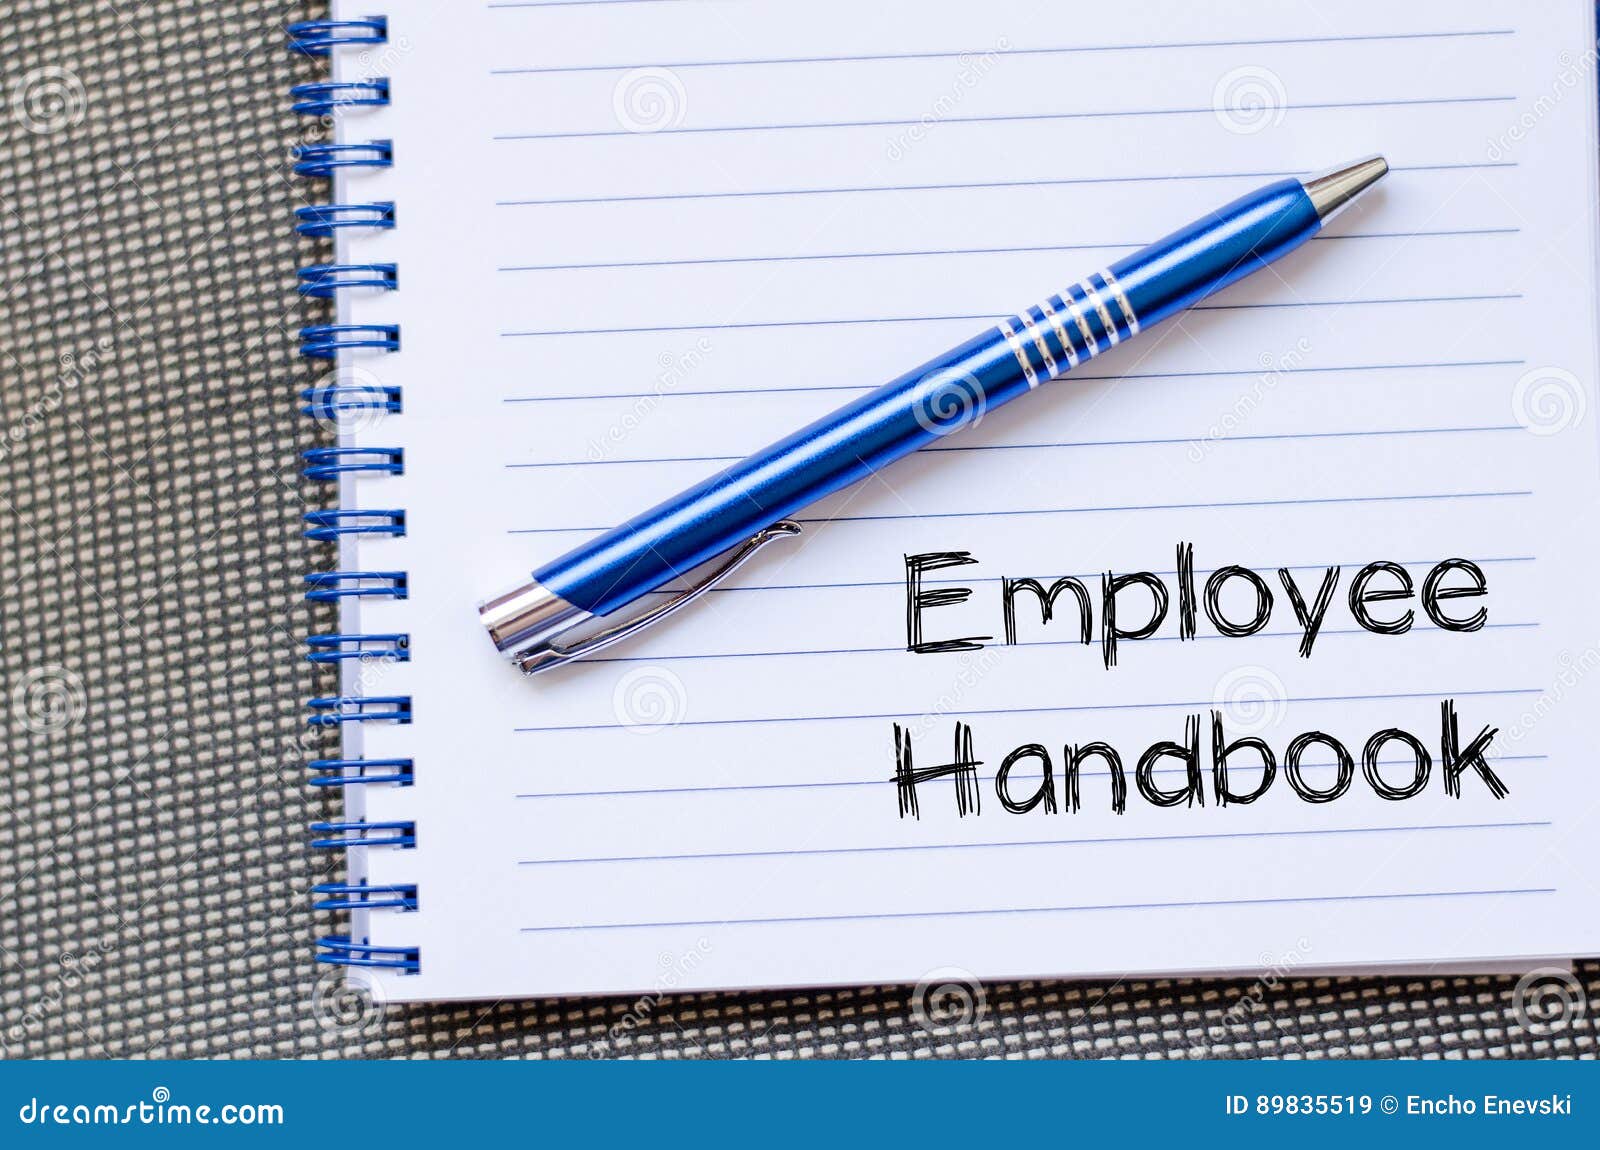 employee handbook text concept on notebook